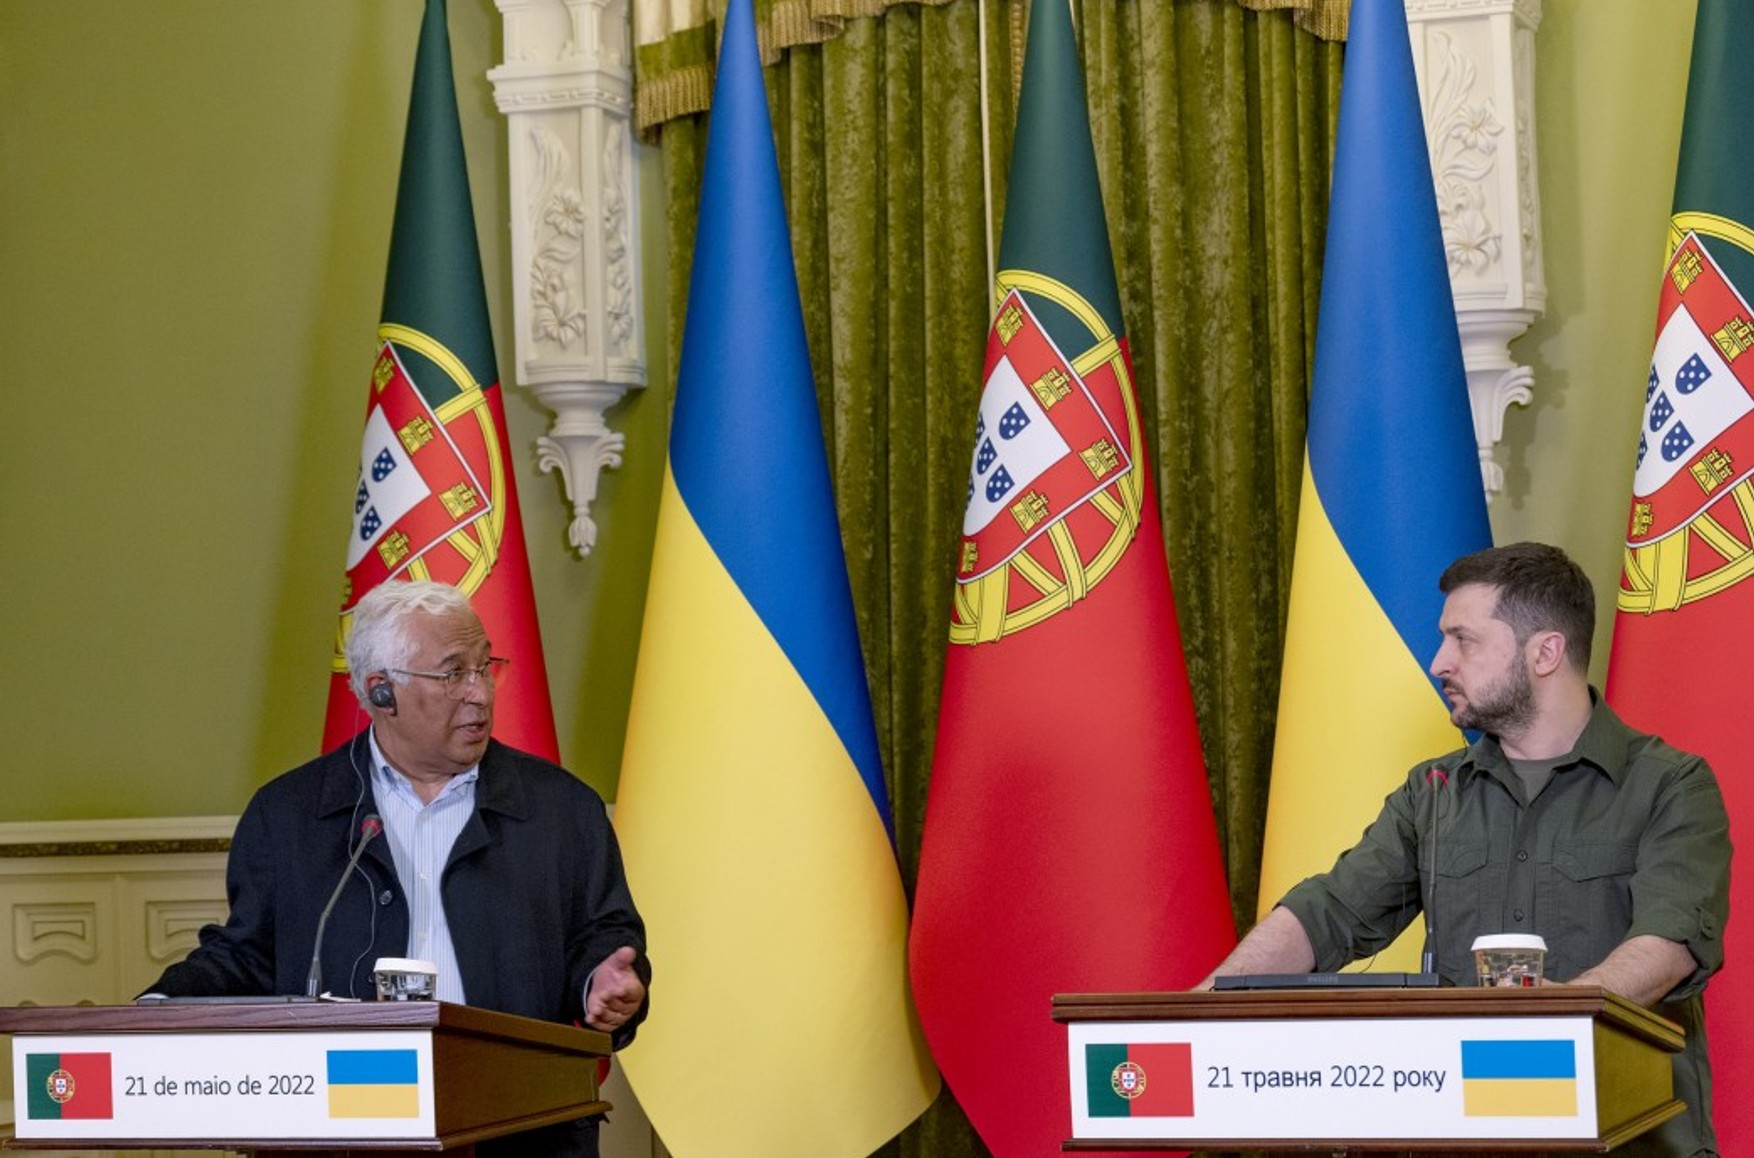 Португалия выделит Украине €250 млн финансовой поддержки. Премьер-министр Португалии Антониу Кошта подписал документ во время визита в Киев